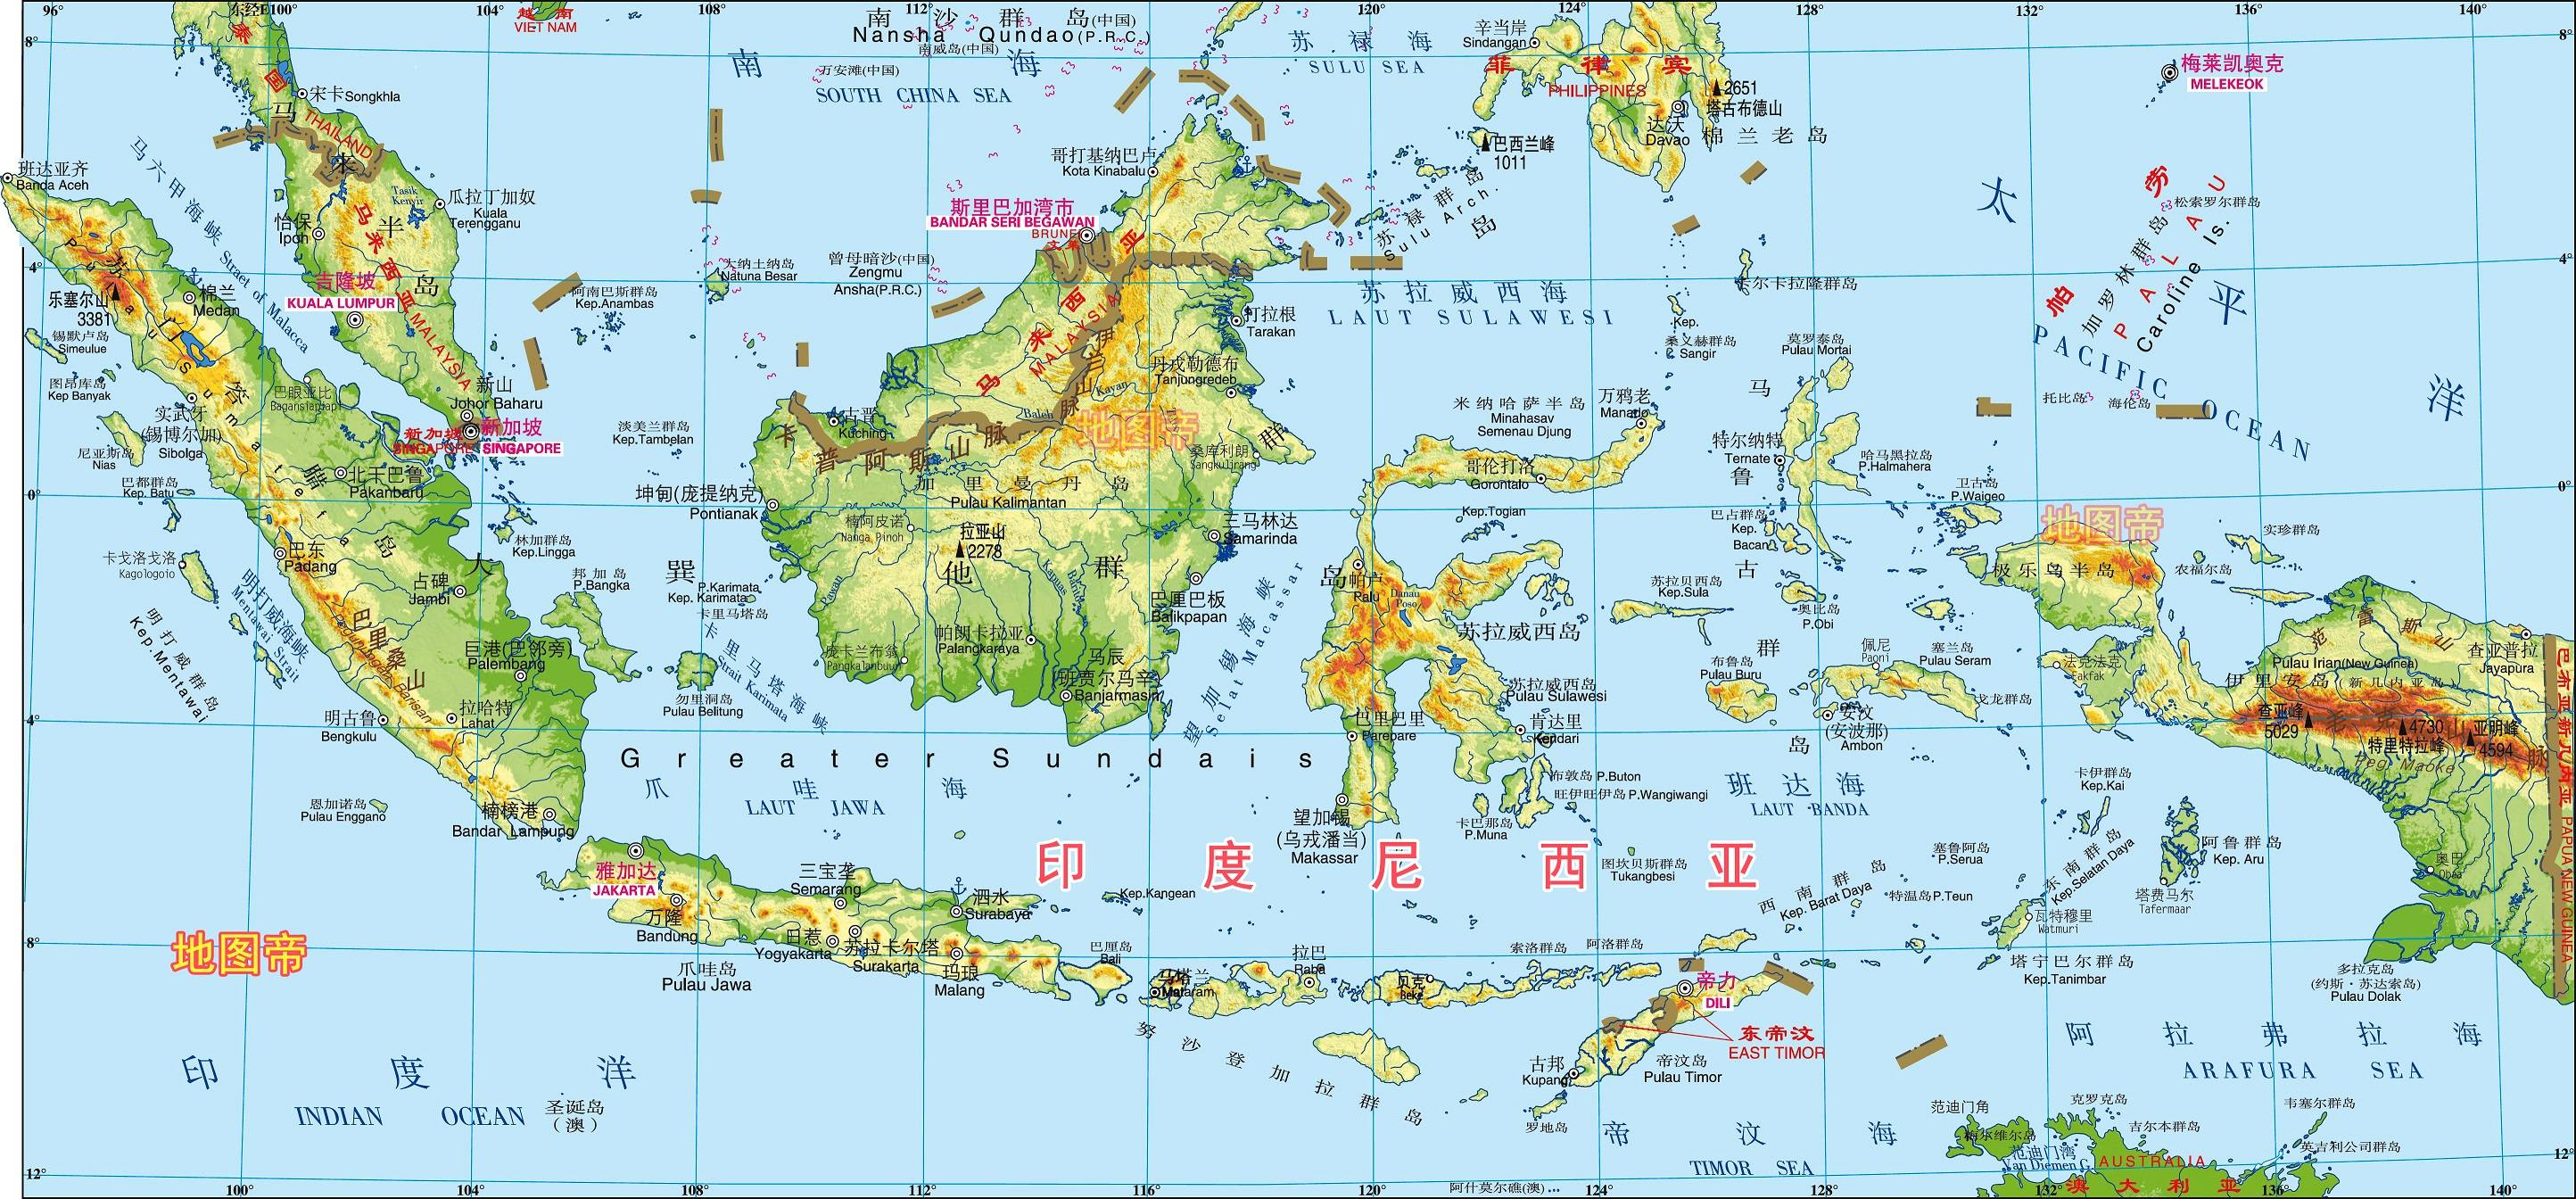 图-印度尼西亚地图帝汶岛,位于亚洲与大洋洲结合部,面积约3.